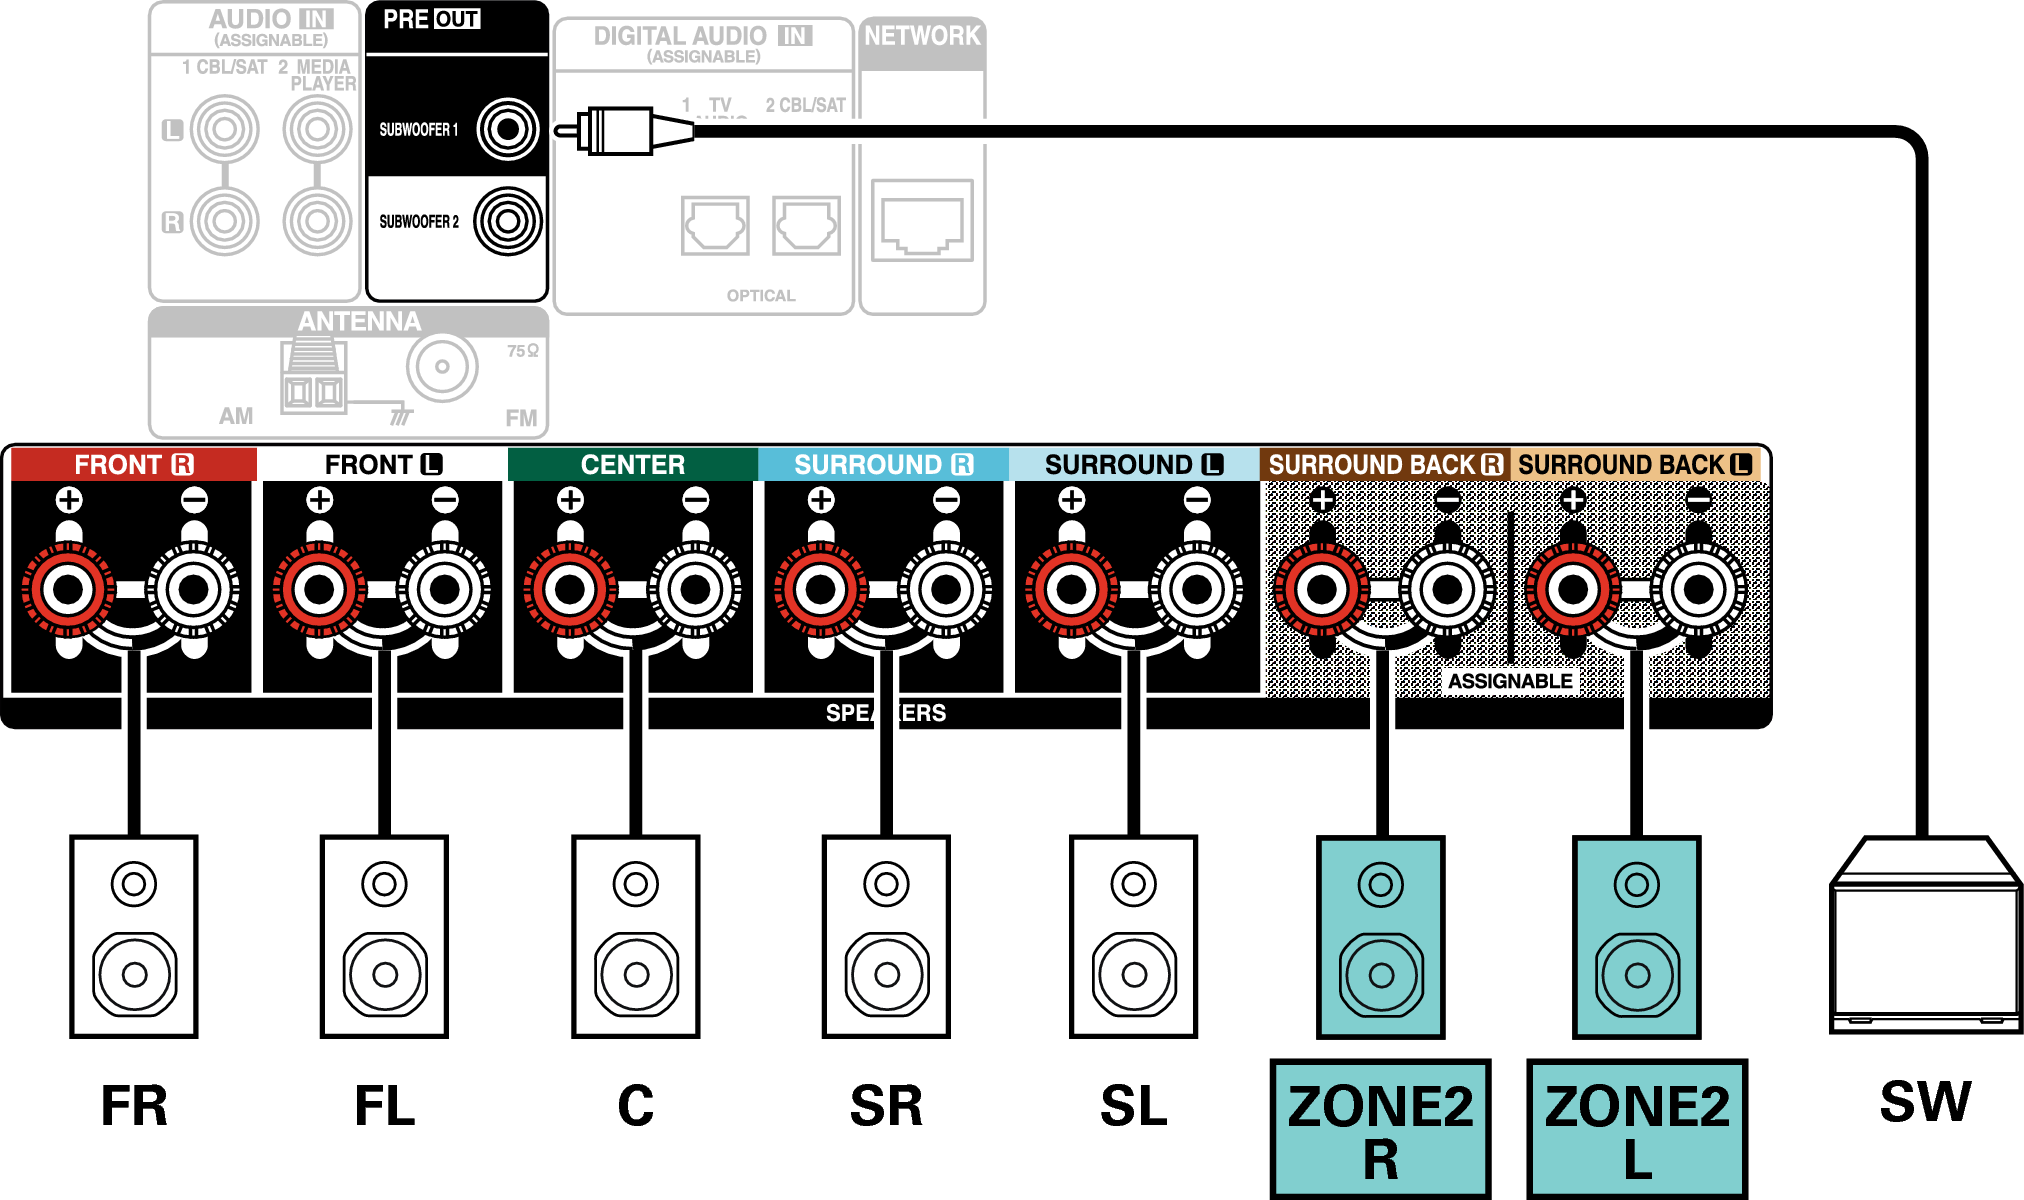 Conne SP 5.1 ZONE2 S77E2